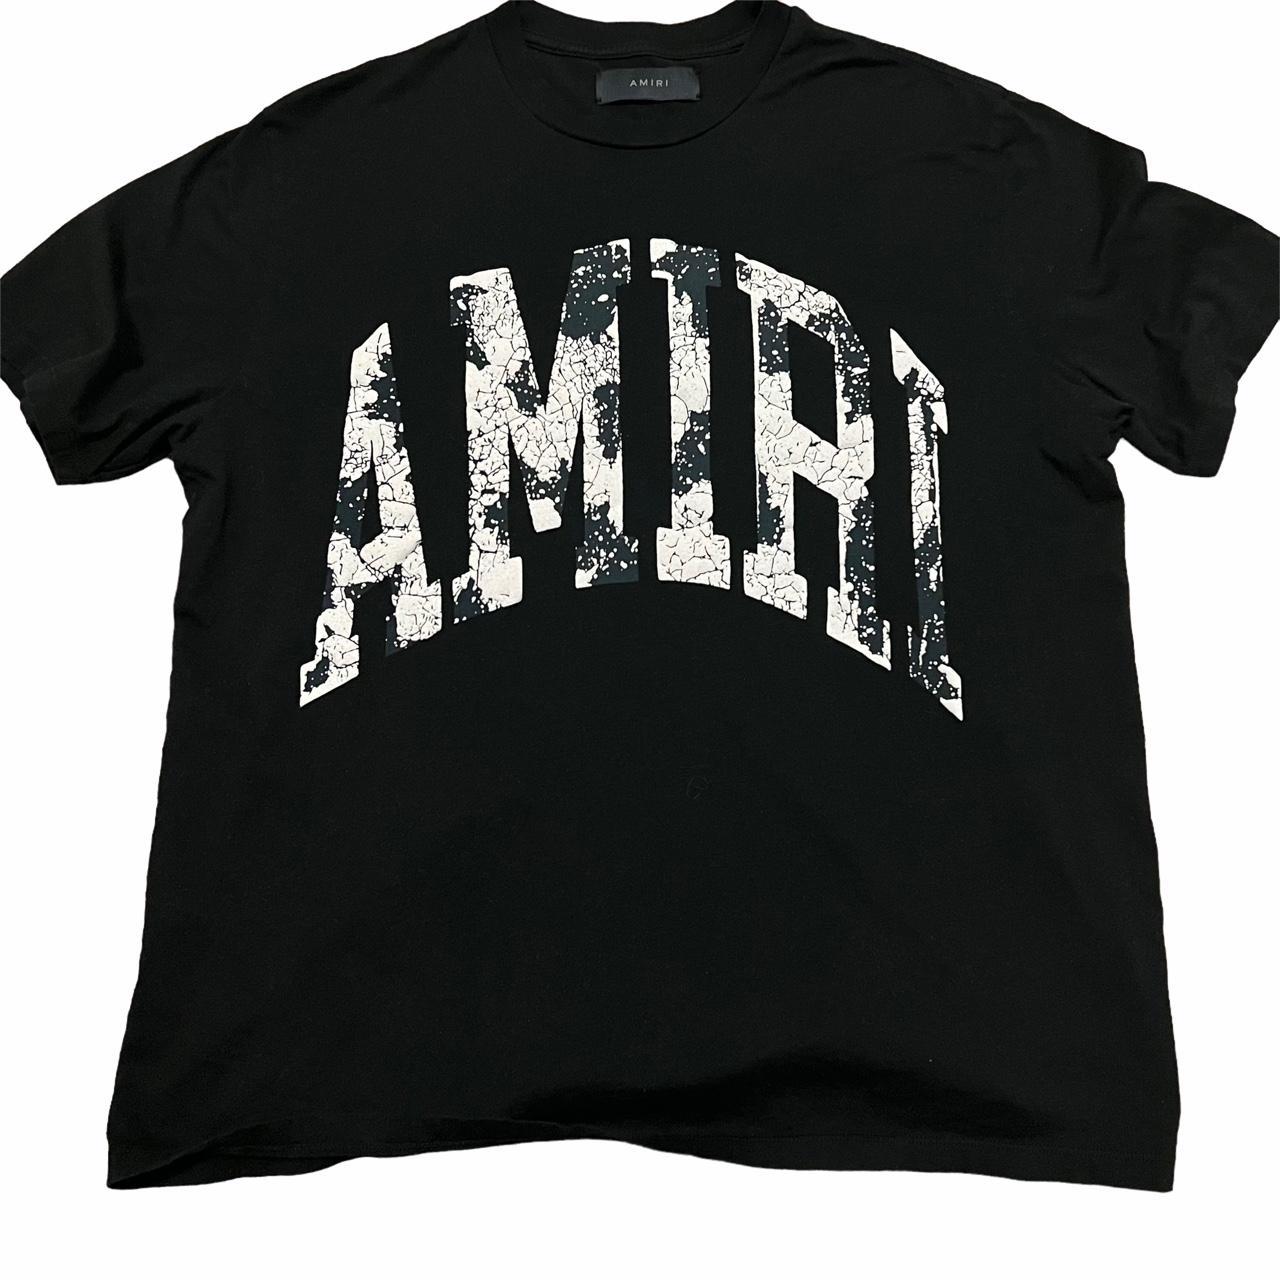 Amiri Men's Black and White T-shirt